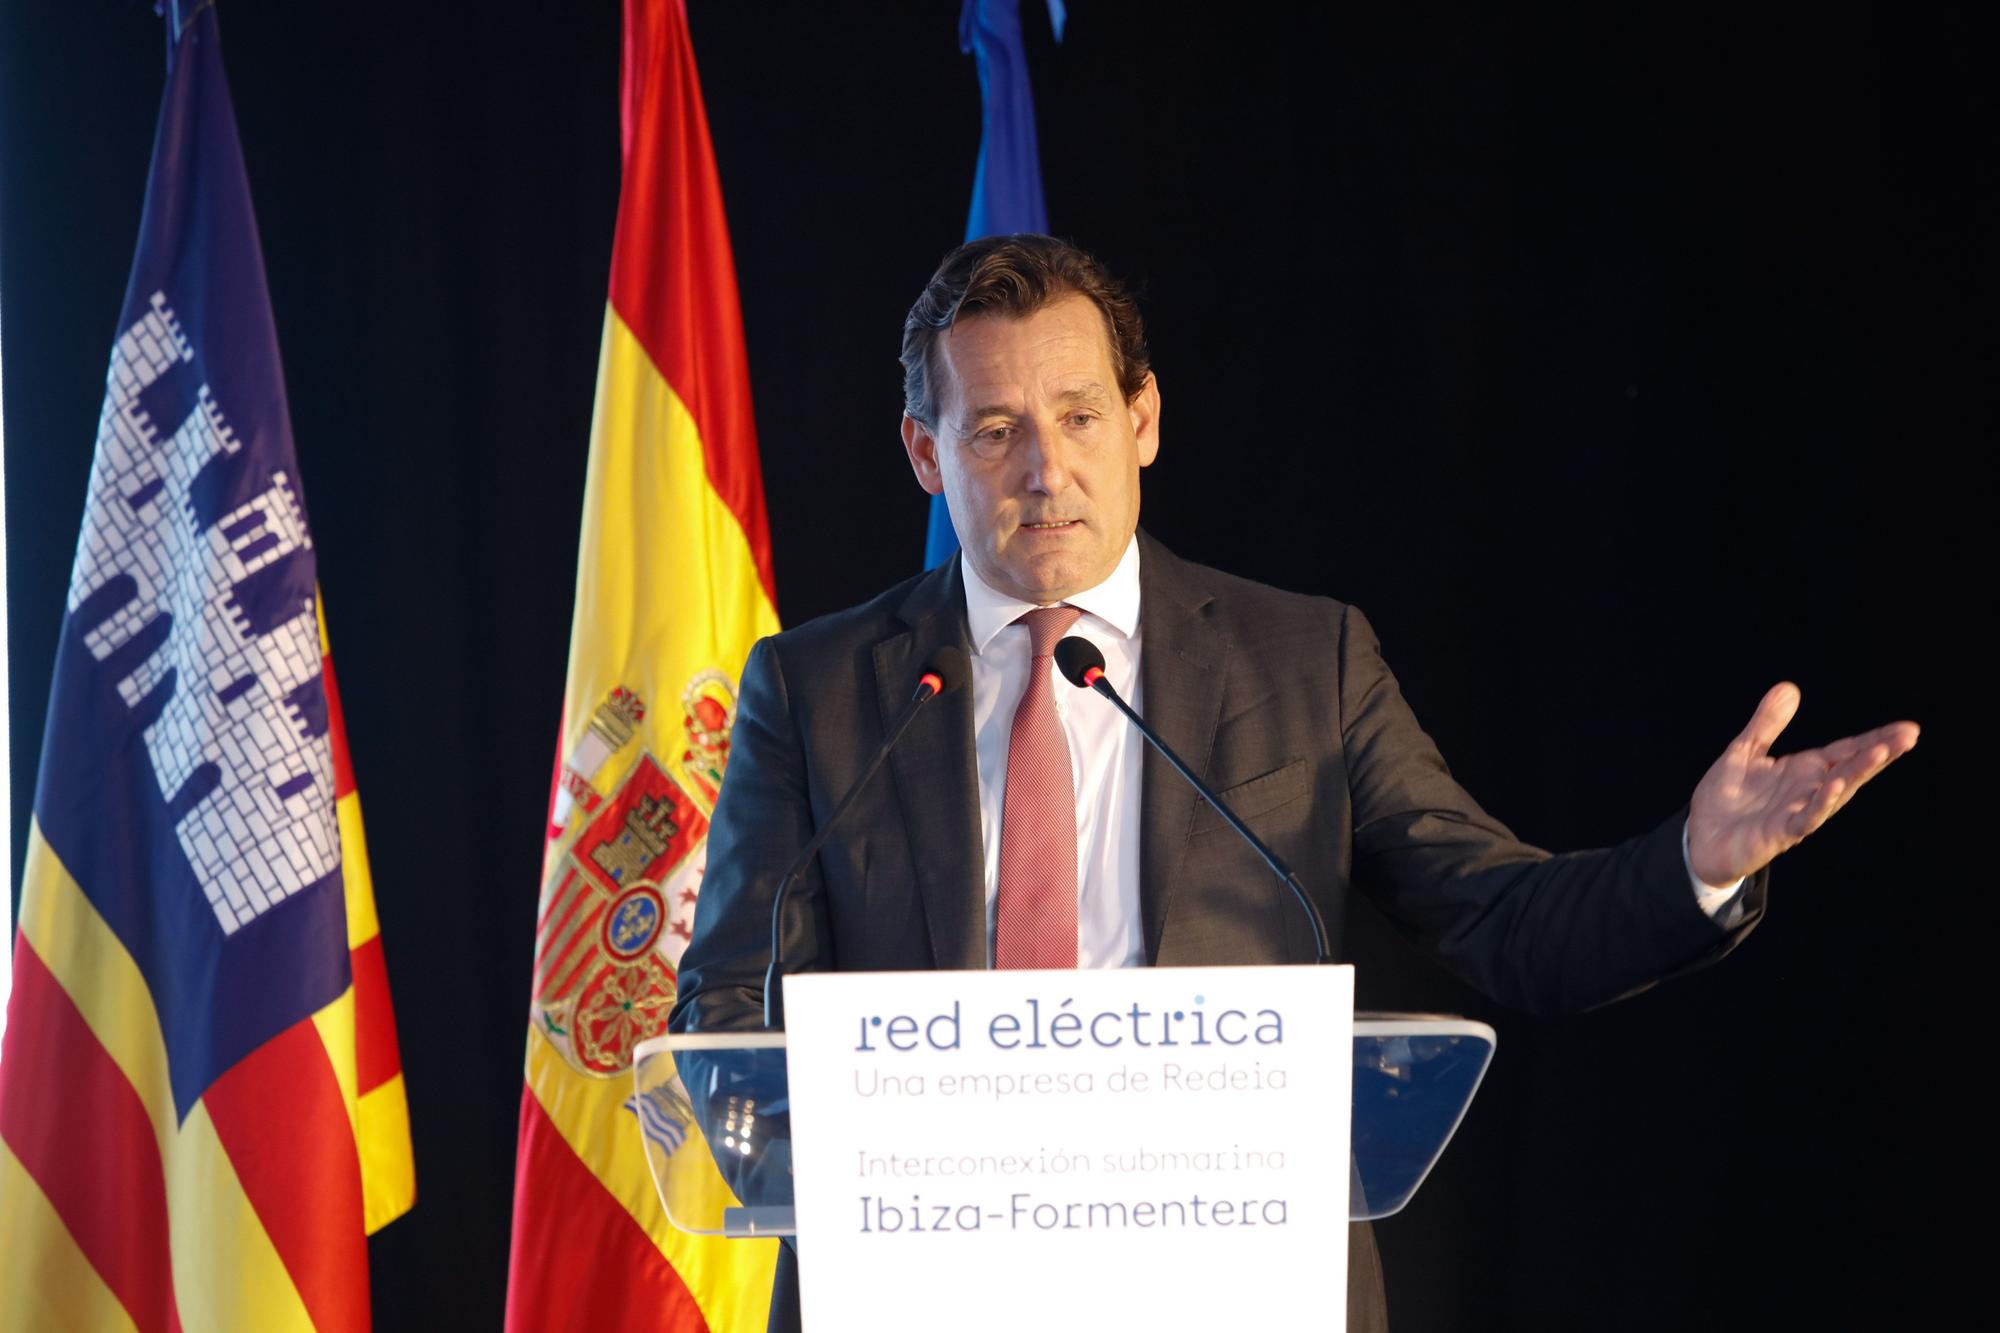 Presentación del nuevo enlace eléctrico entre Ibiza y Formentera